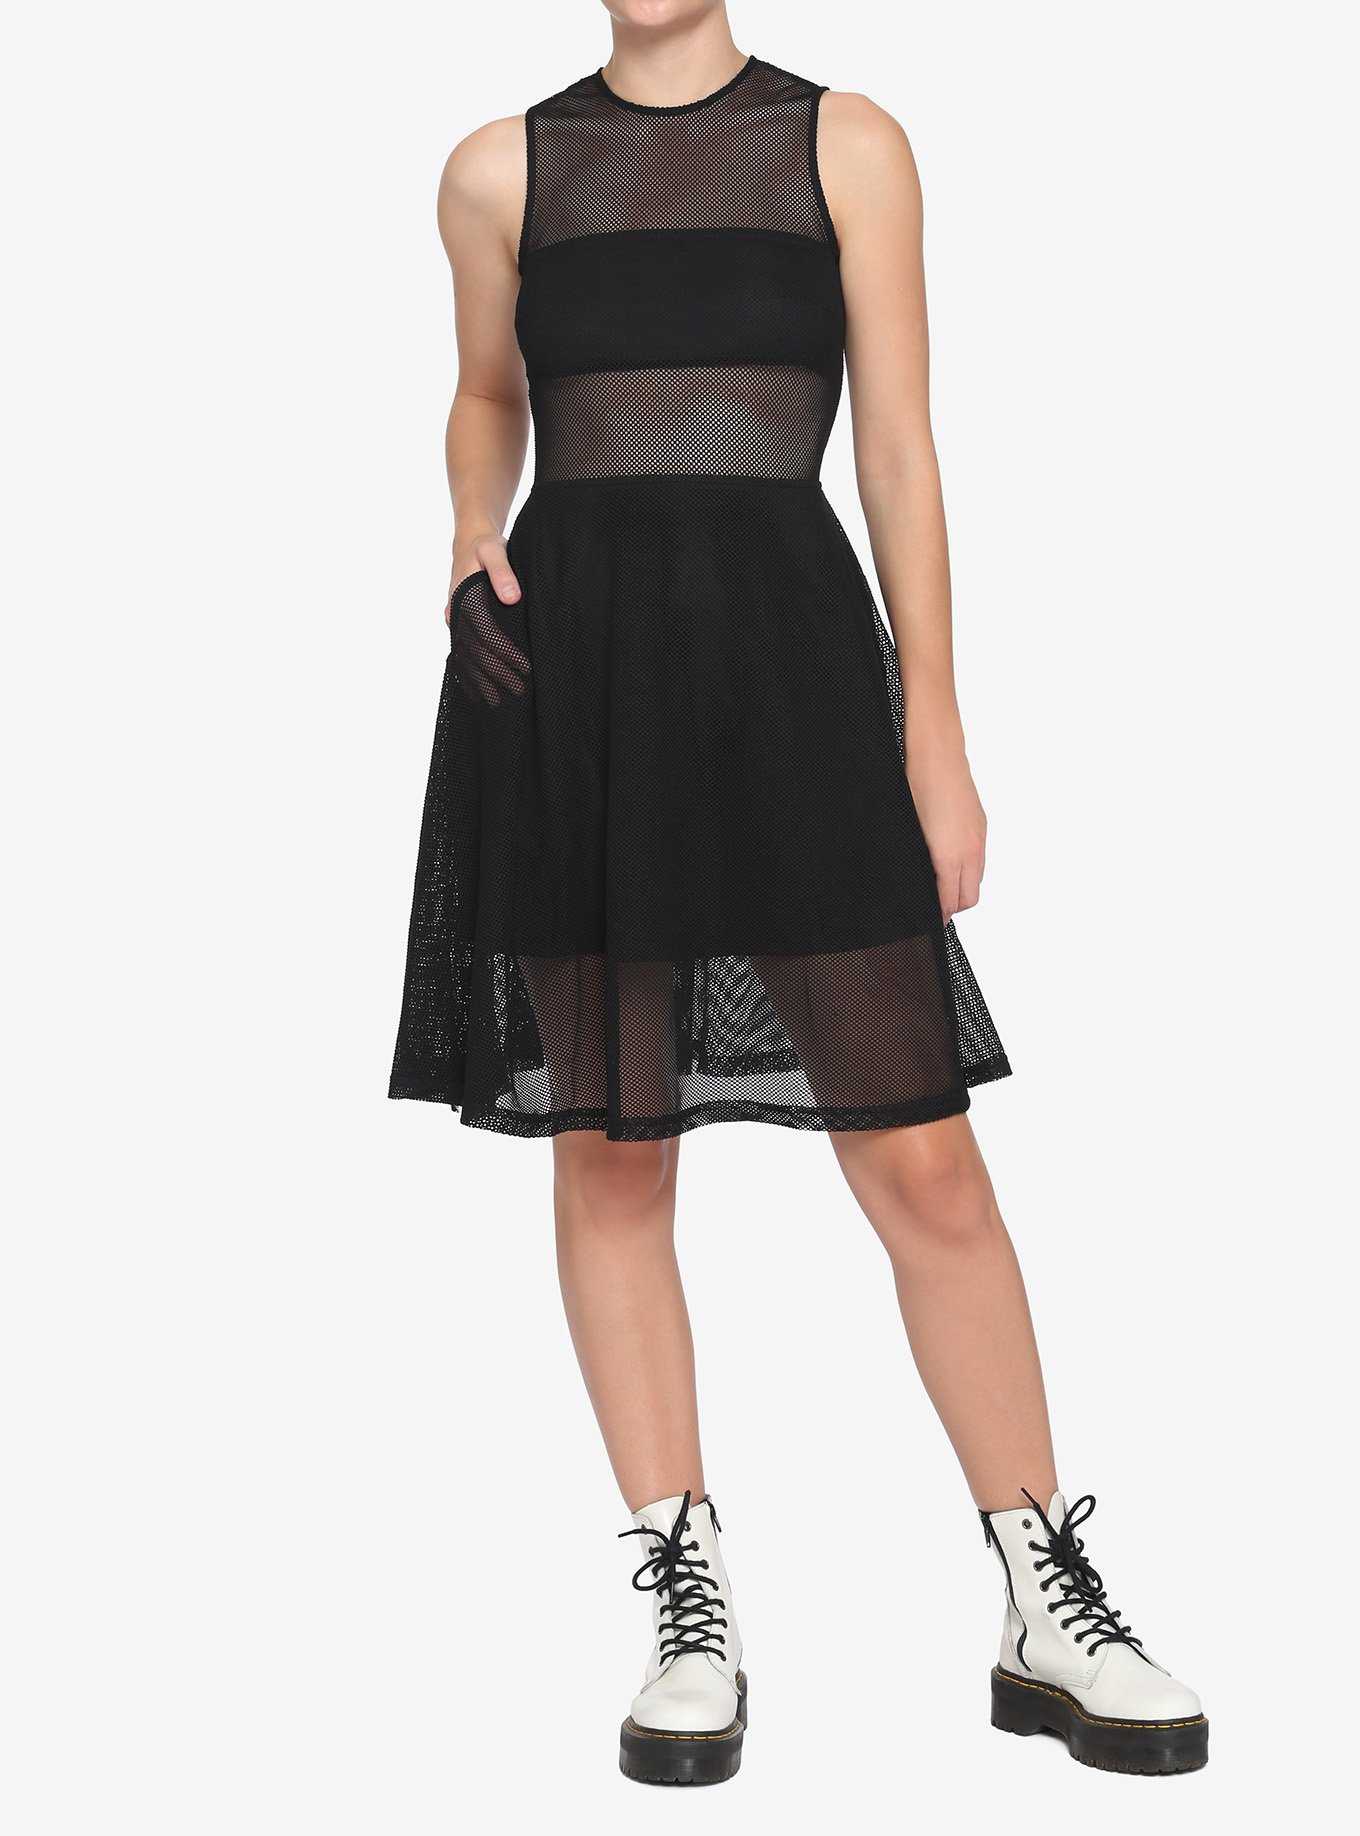 Black Knit Dress, , hi-res